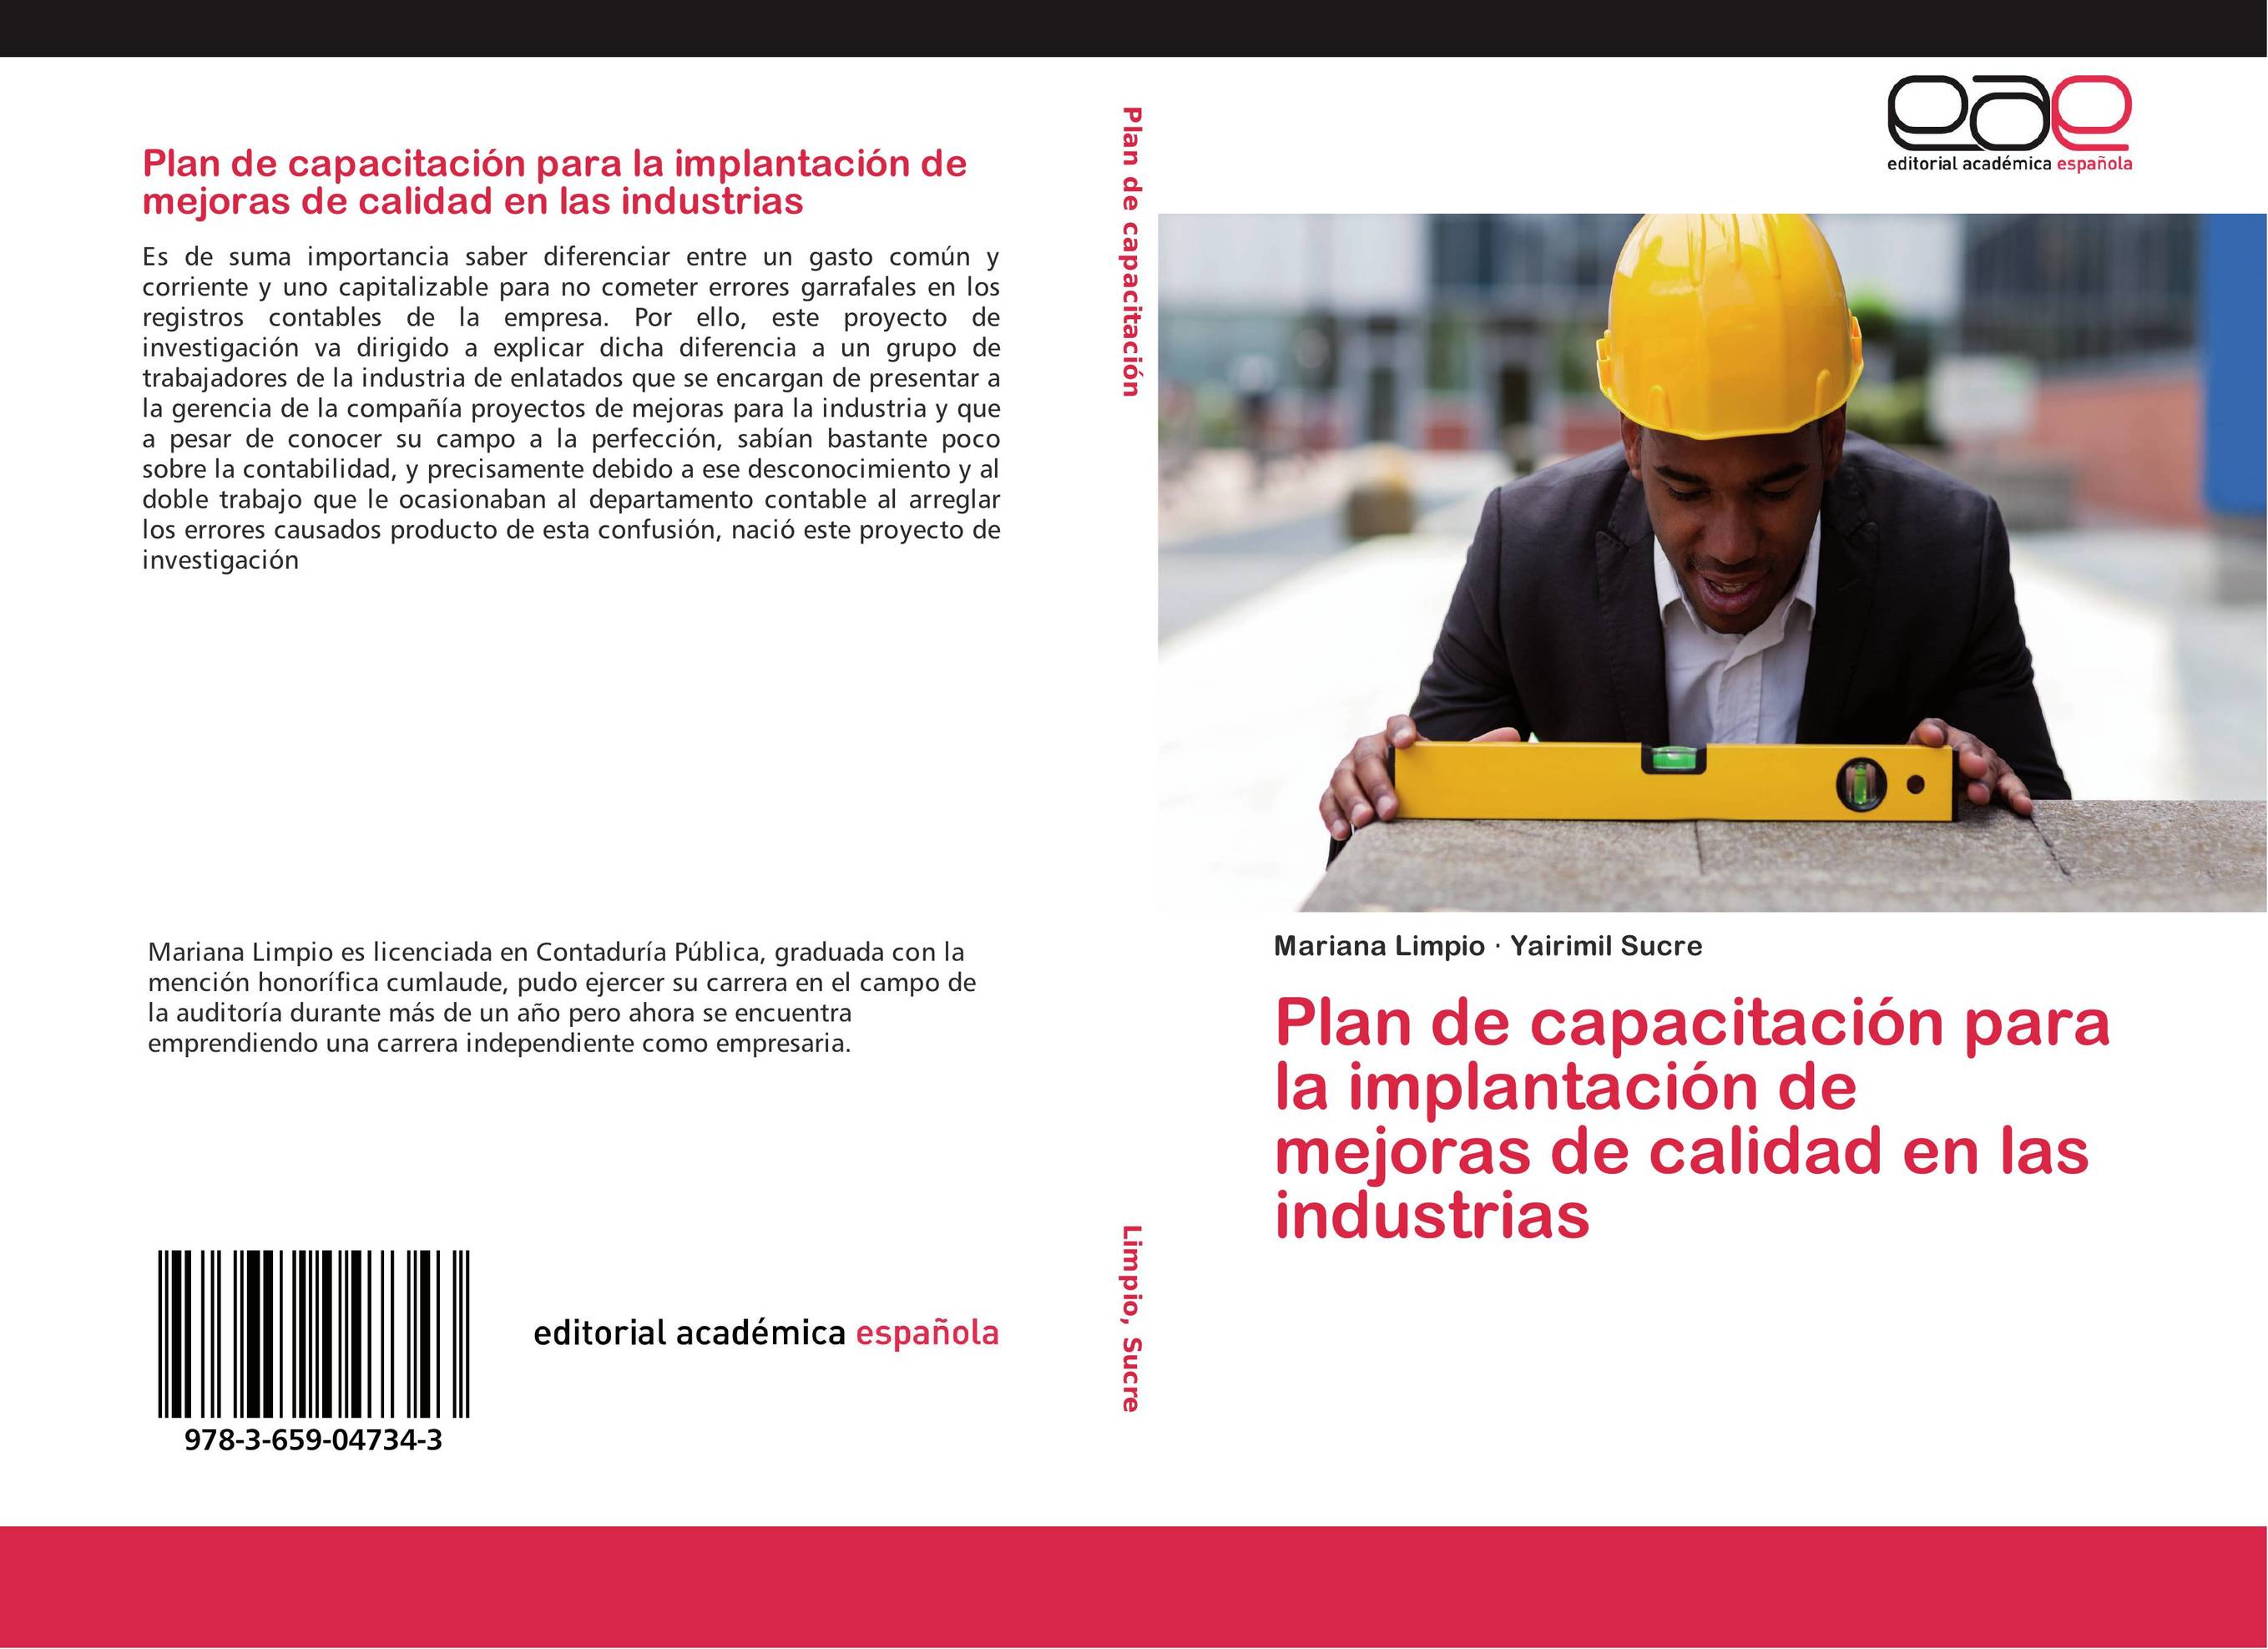 Plan de capacitación para la implantación de mejoras de calidad en las industrias